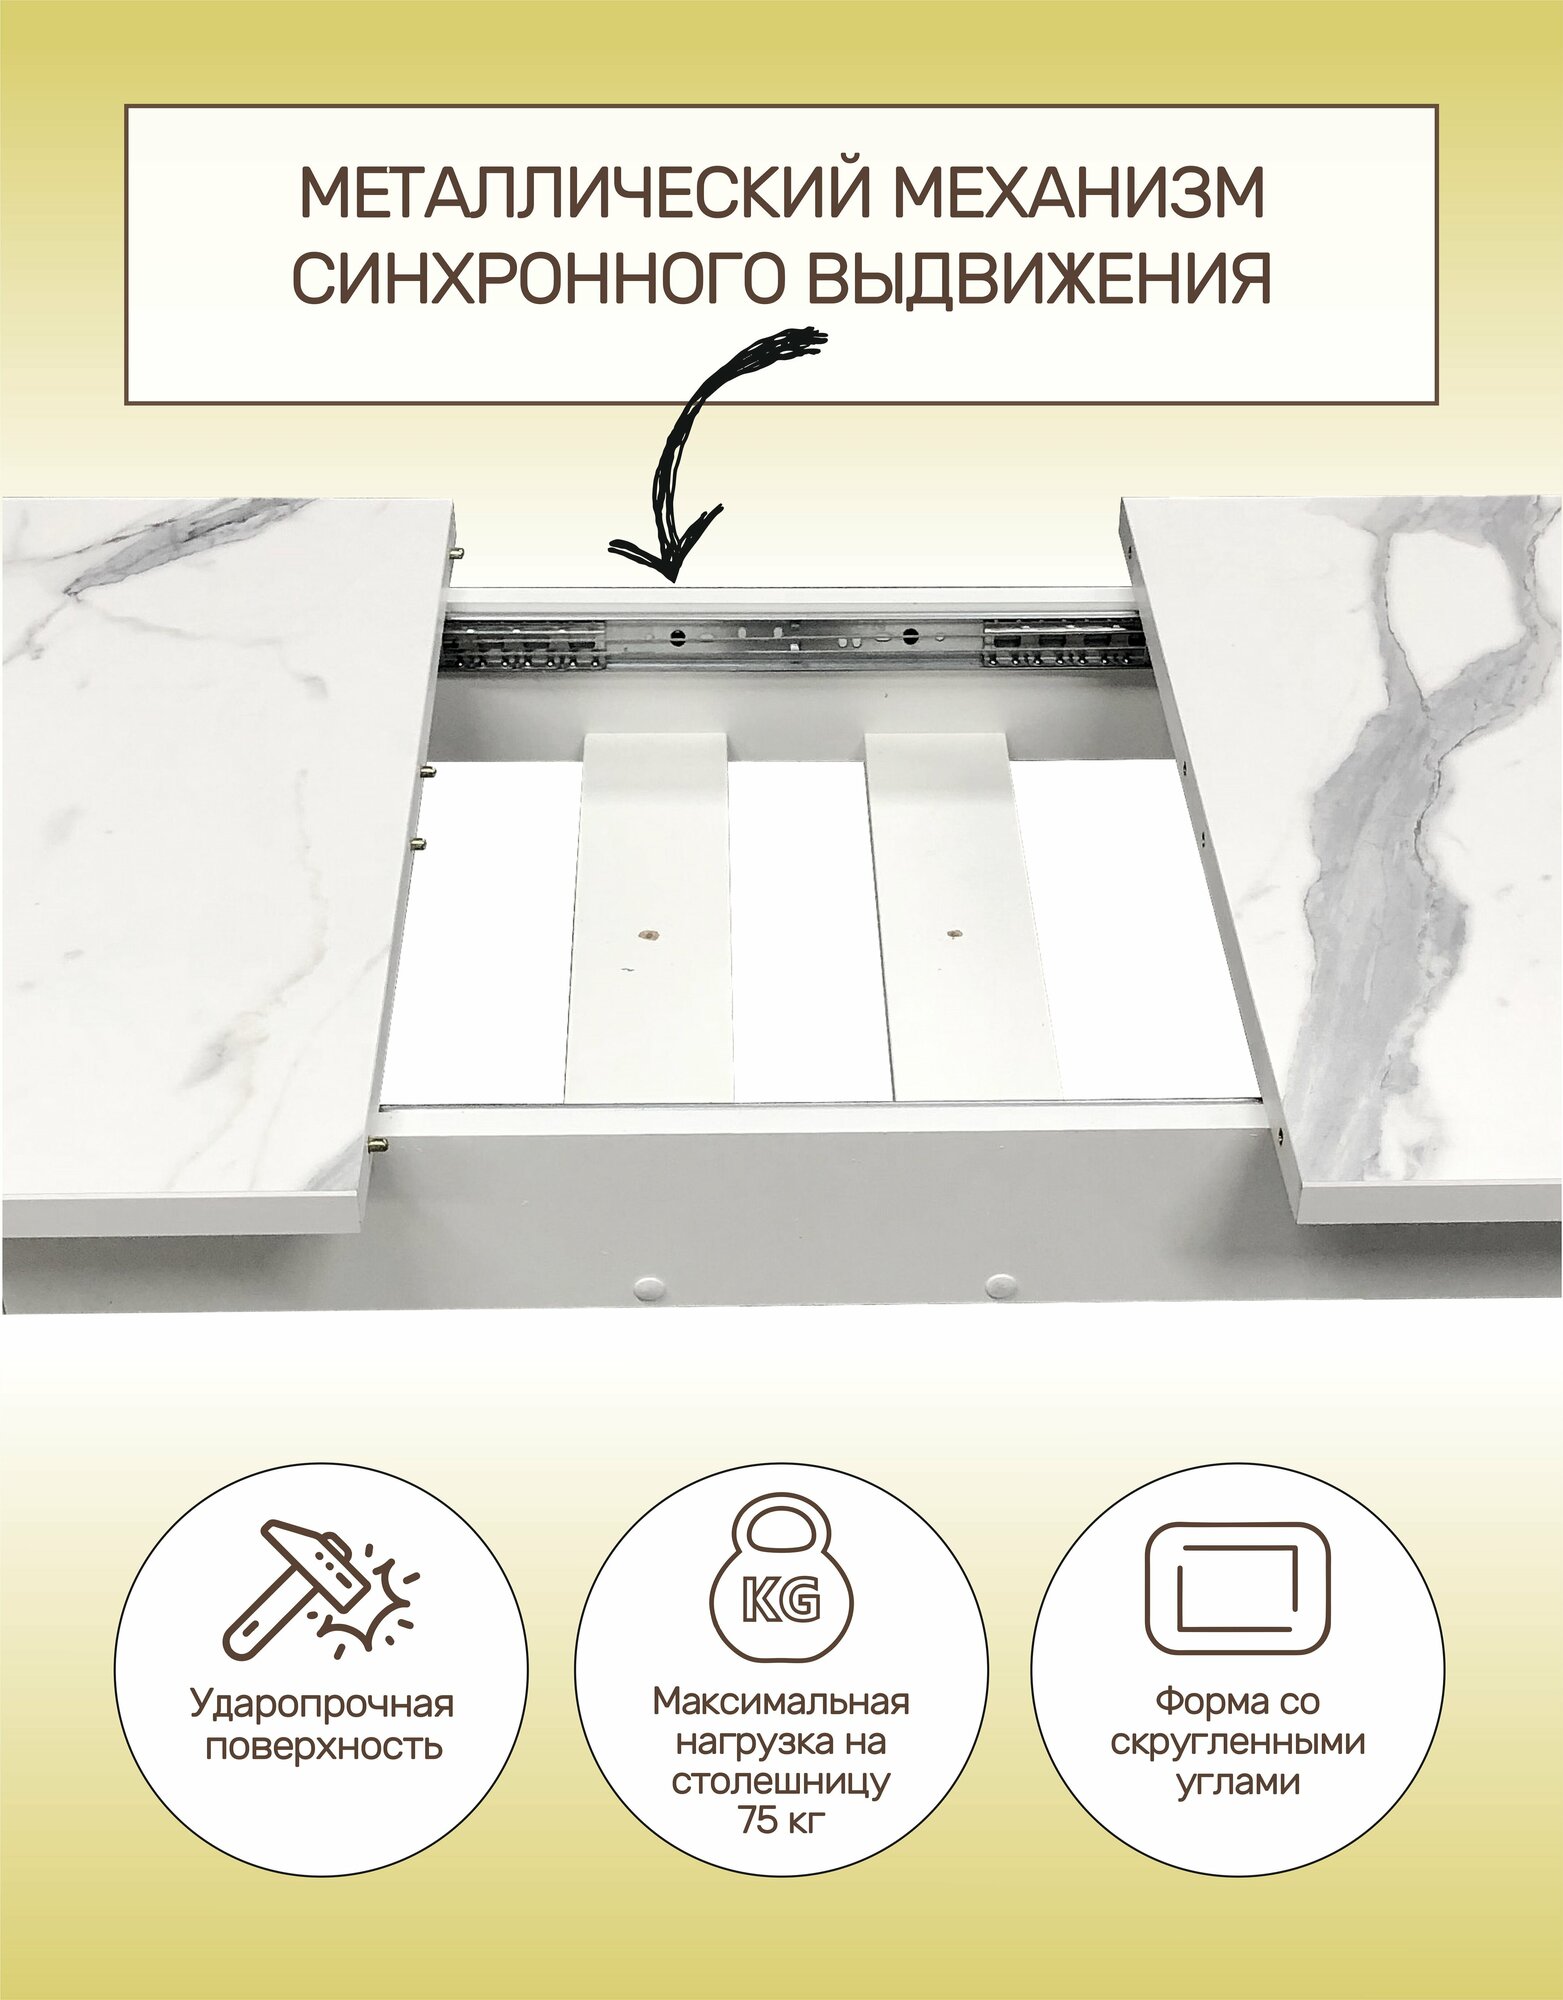 Стол кухонный обеденный раздвижной Валенсия Конус мрамор белый, 100х60см